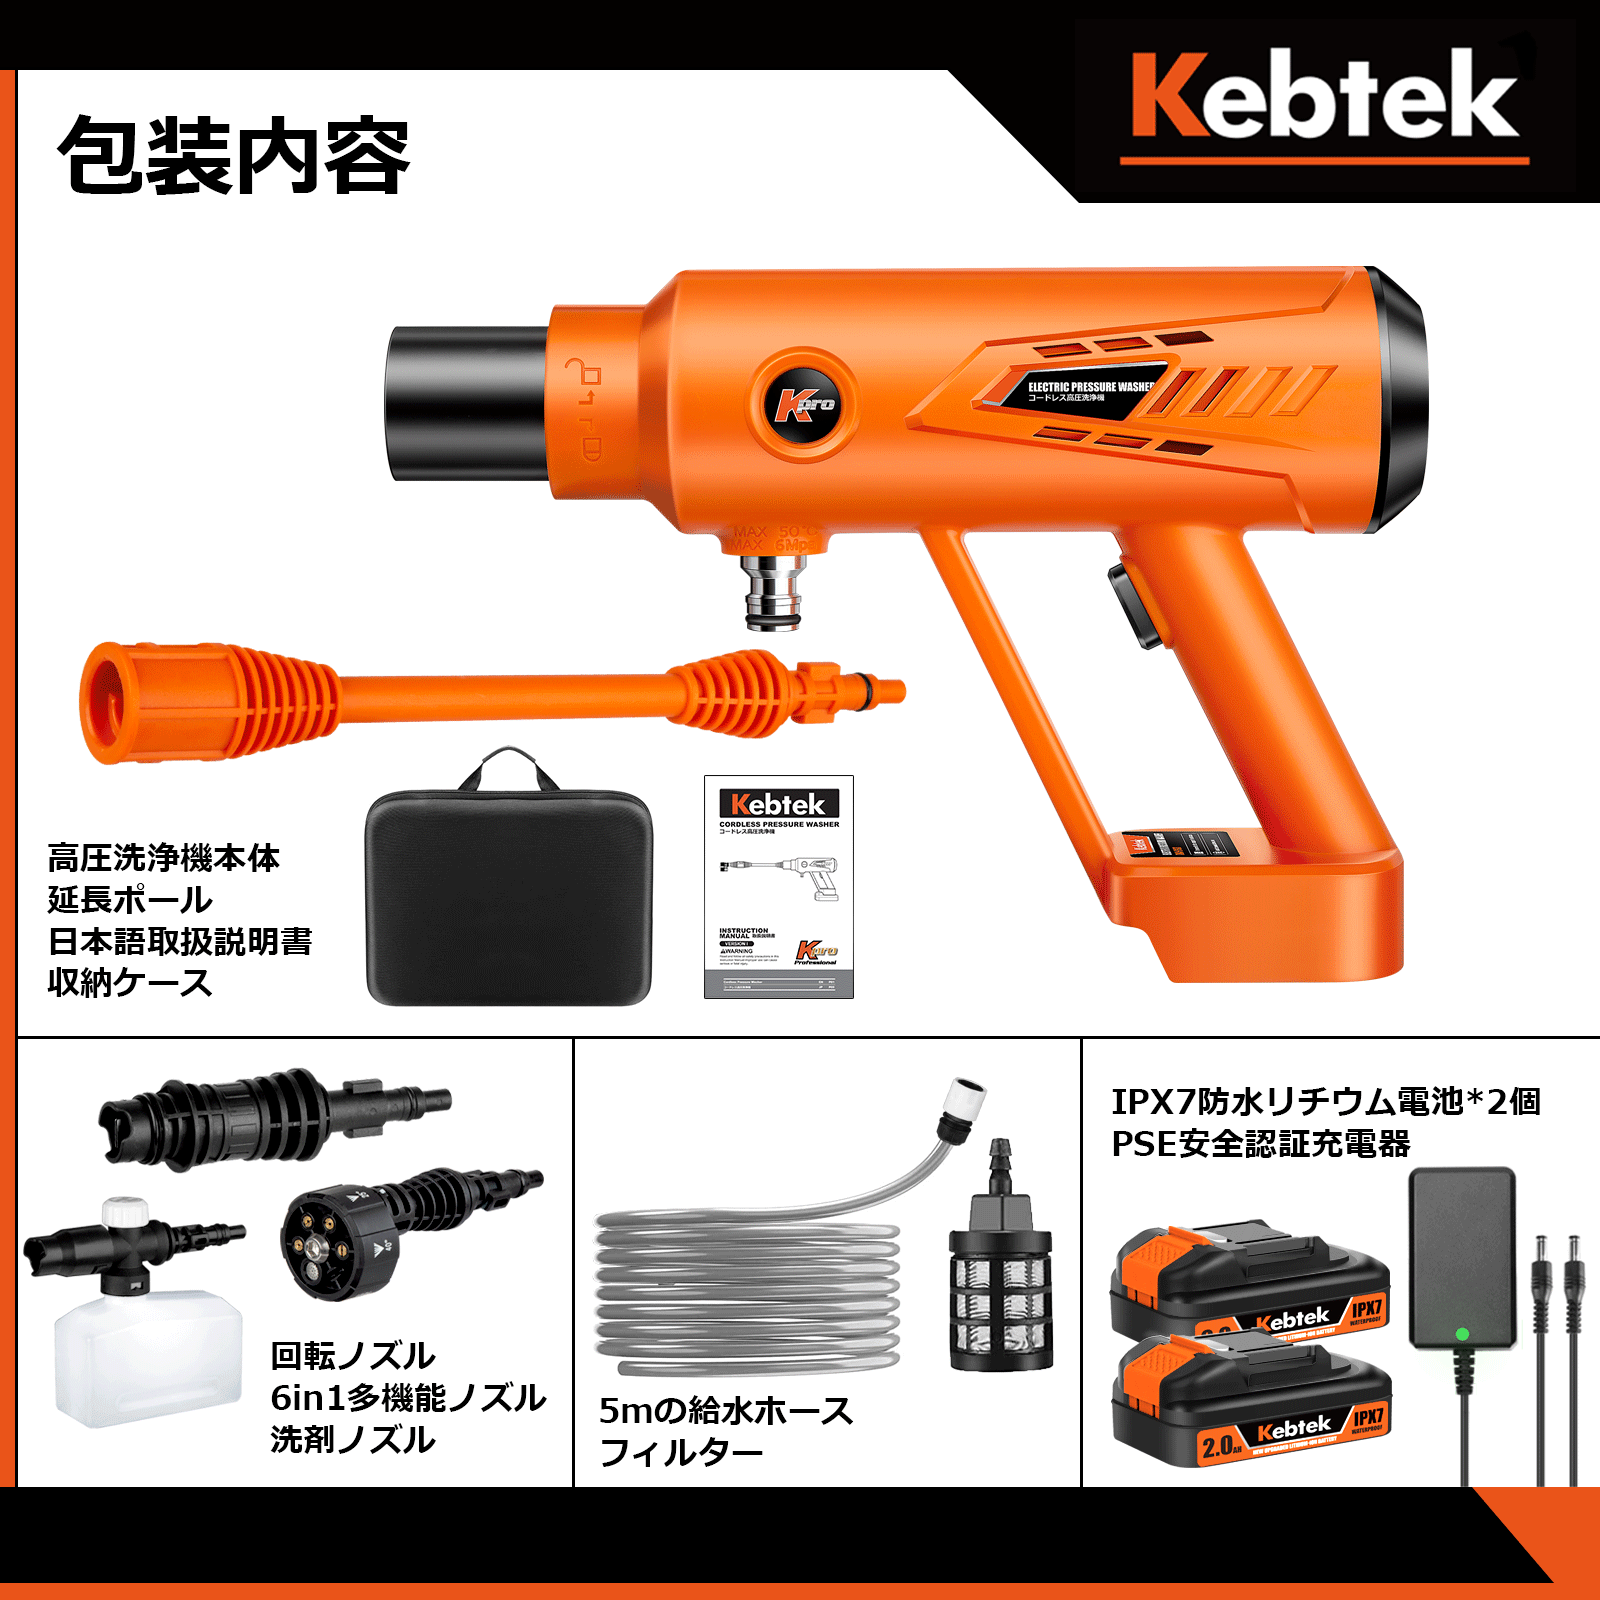 年末特典セール】【IPX7防水バッテリー2個付属】Kebtek 高圧洗浄機